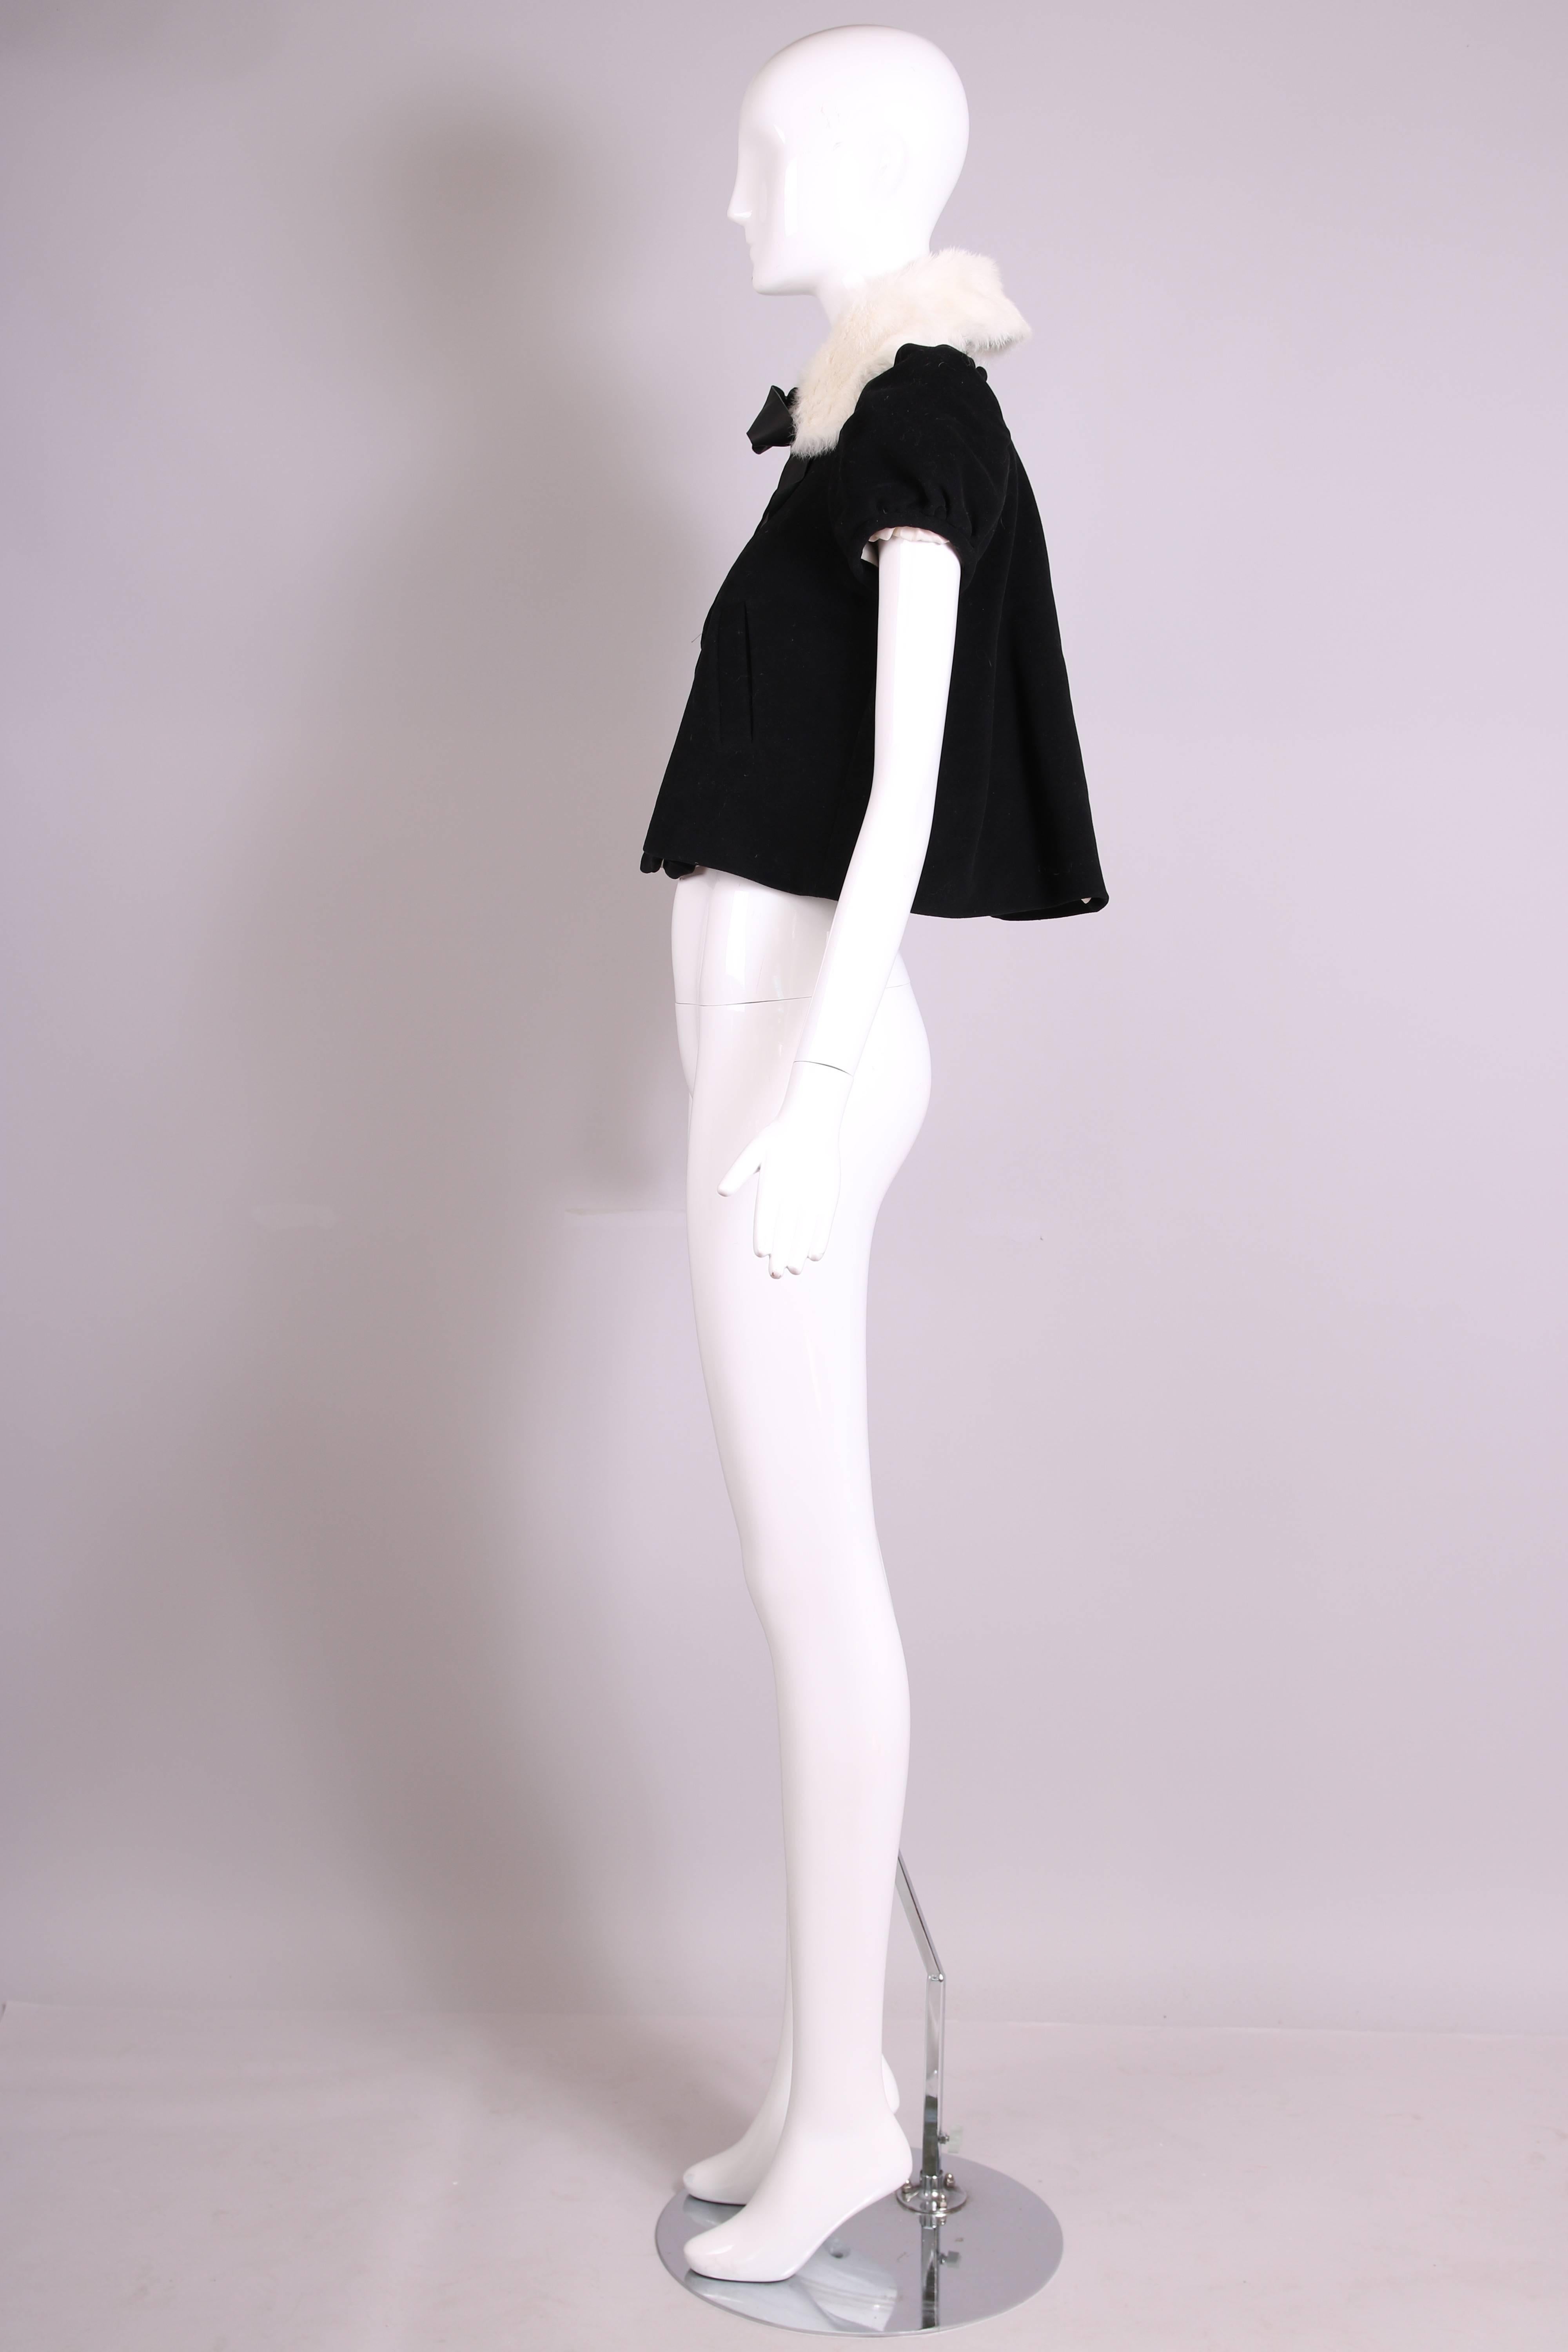 Women's Vintage Jean-Paul Gaultier Black Velvet Jacket Top w/Fur Collar & Neck Ties